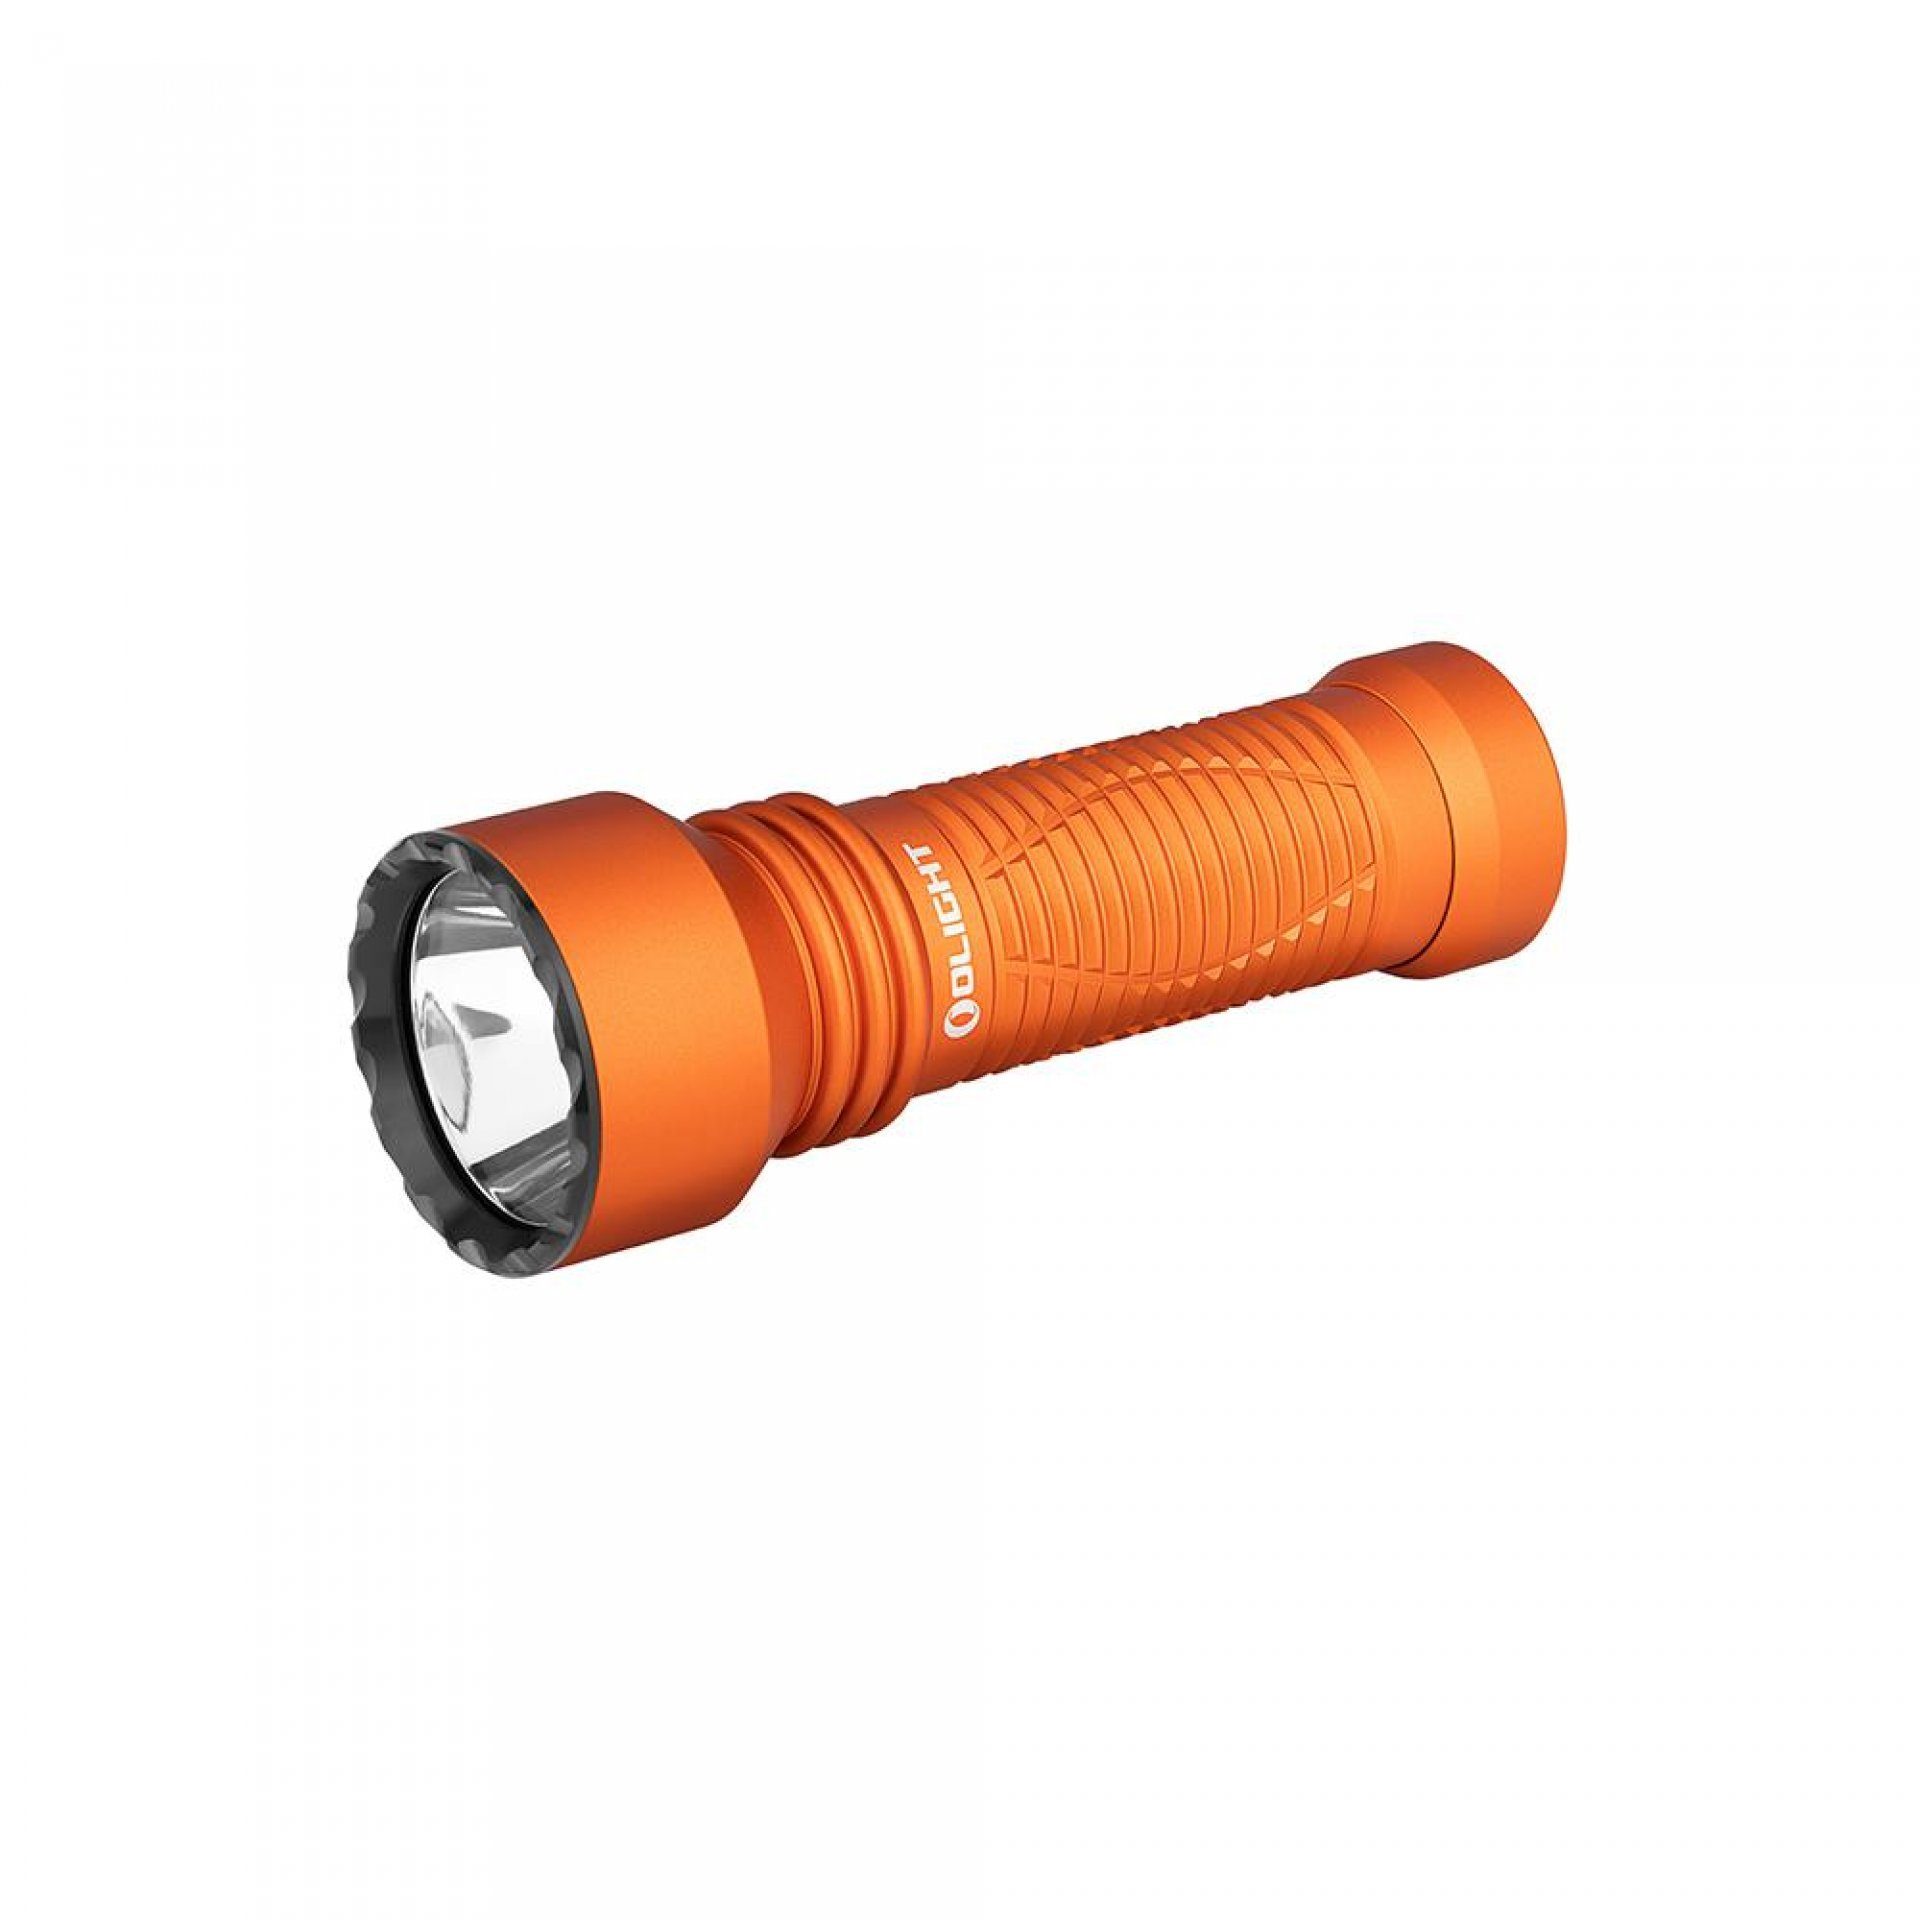 OLIGHT LED Taschenlampe Javelot Mini LED taktische Taschenlampe mit einer runden Lichtquelle, wiederaufbare IPX8 zoombare Handlampe für Notfall, Patrouille, Camping Orange